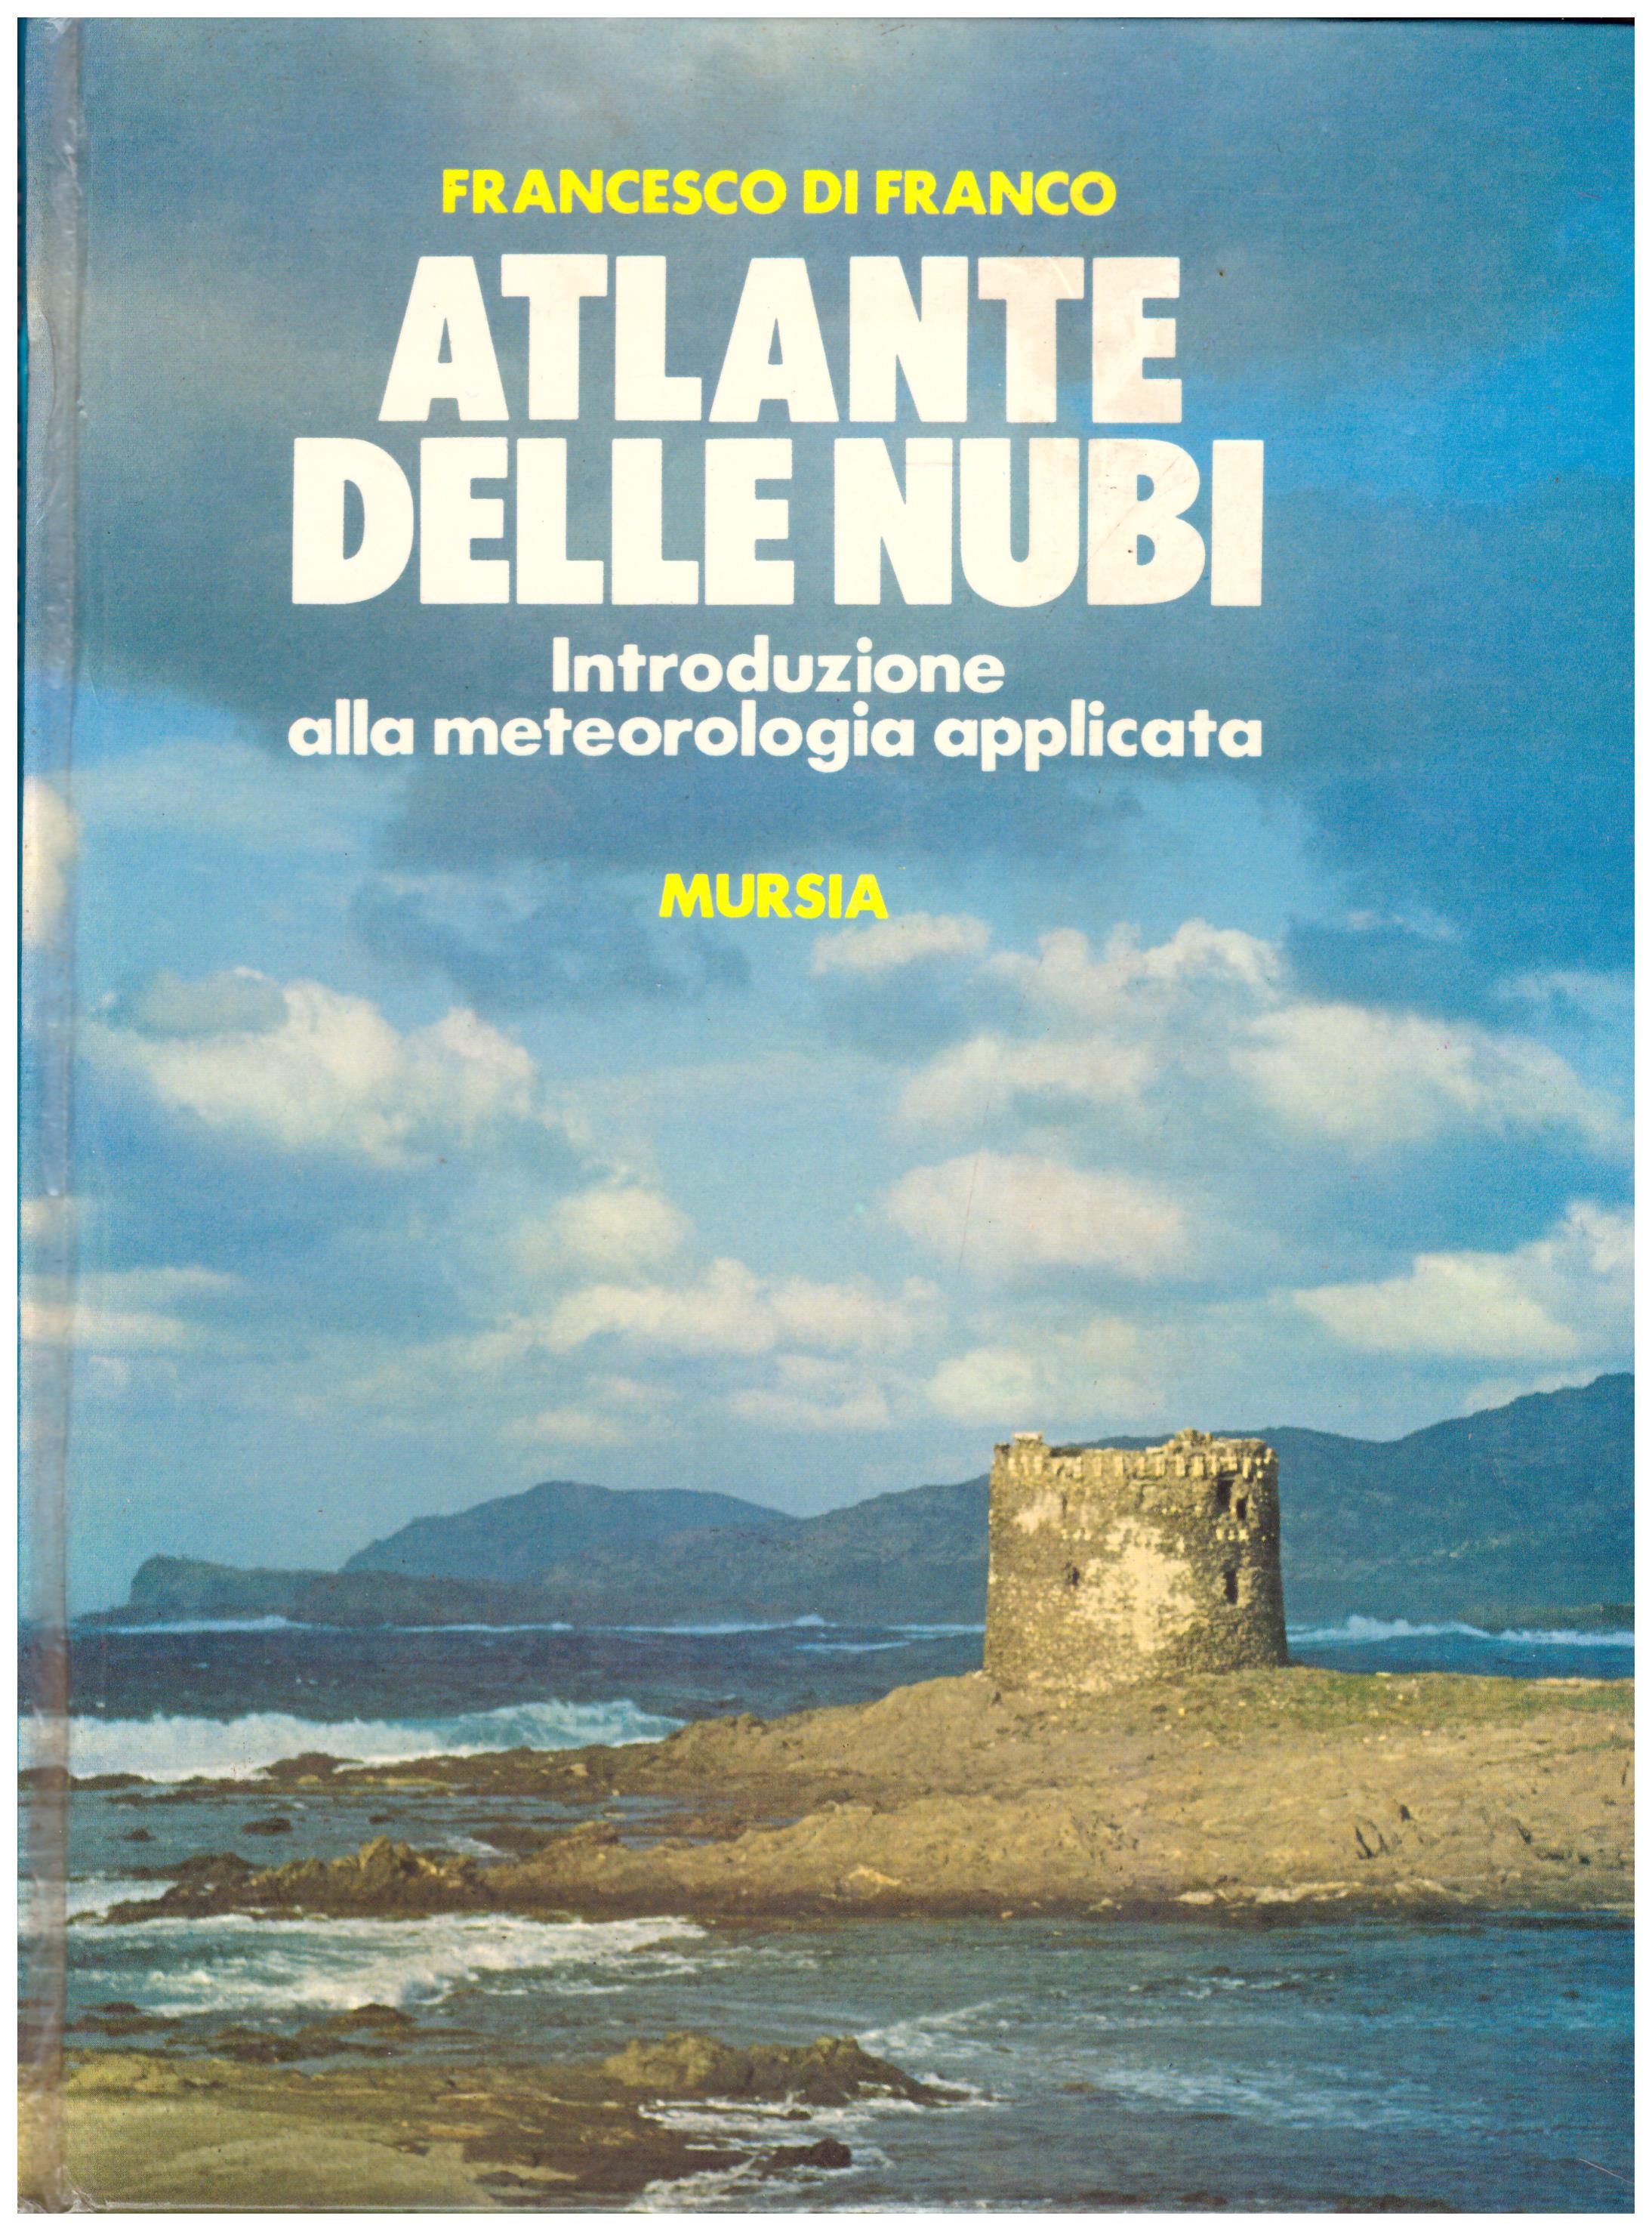 Titolo: Atlante delle nubi Autore: Francesco Di Franco Editore: Mursia, 1976